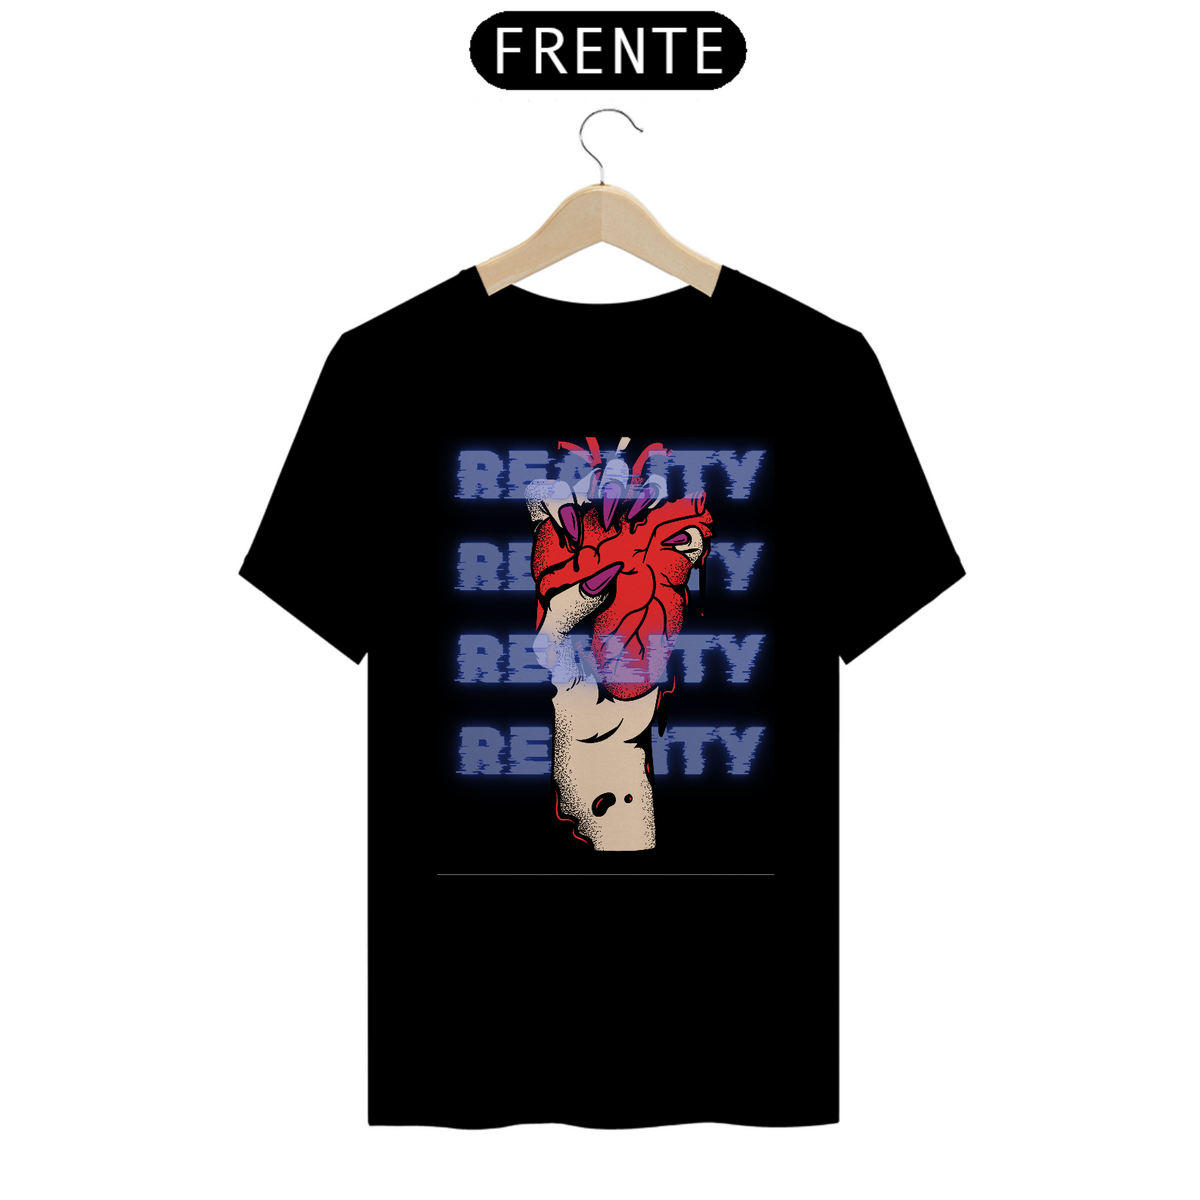 Nome do produto: T-shirt unisex preta